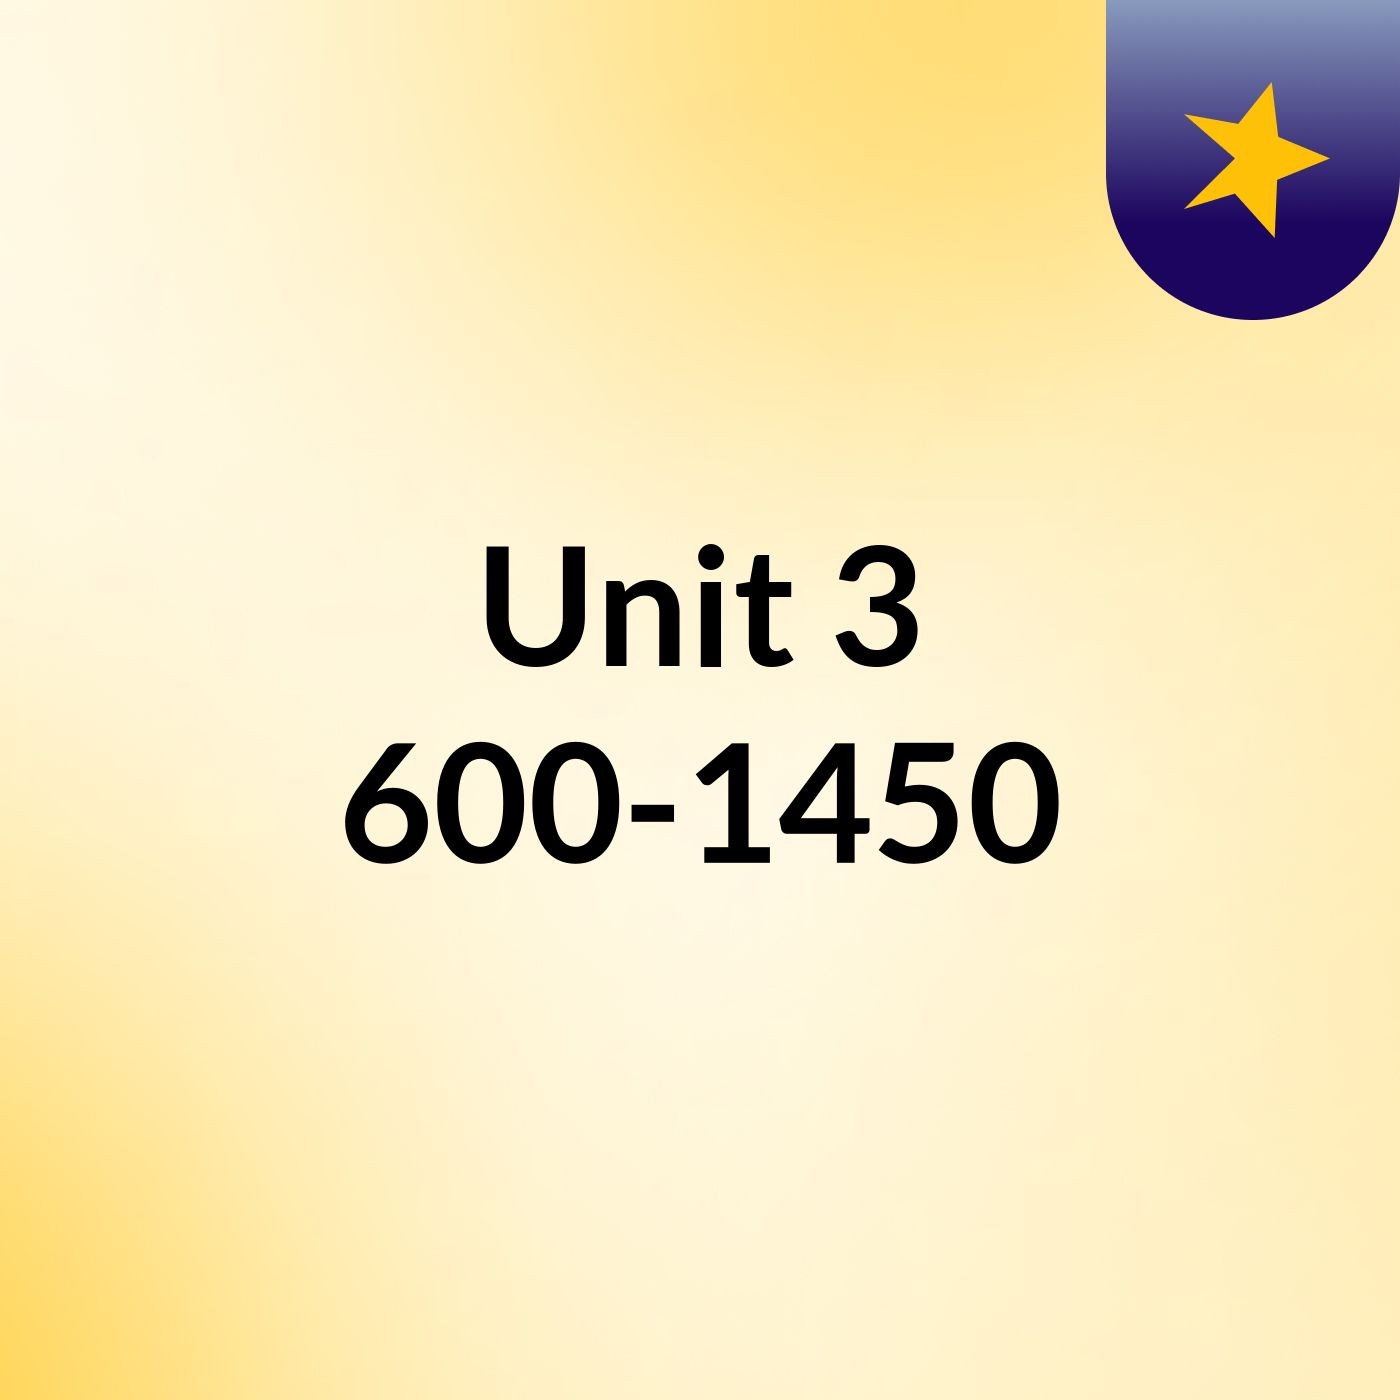 Unit 3: 600-1450